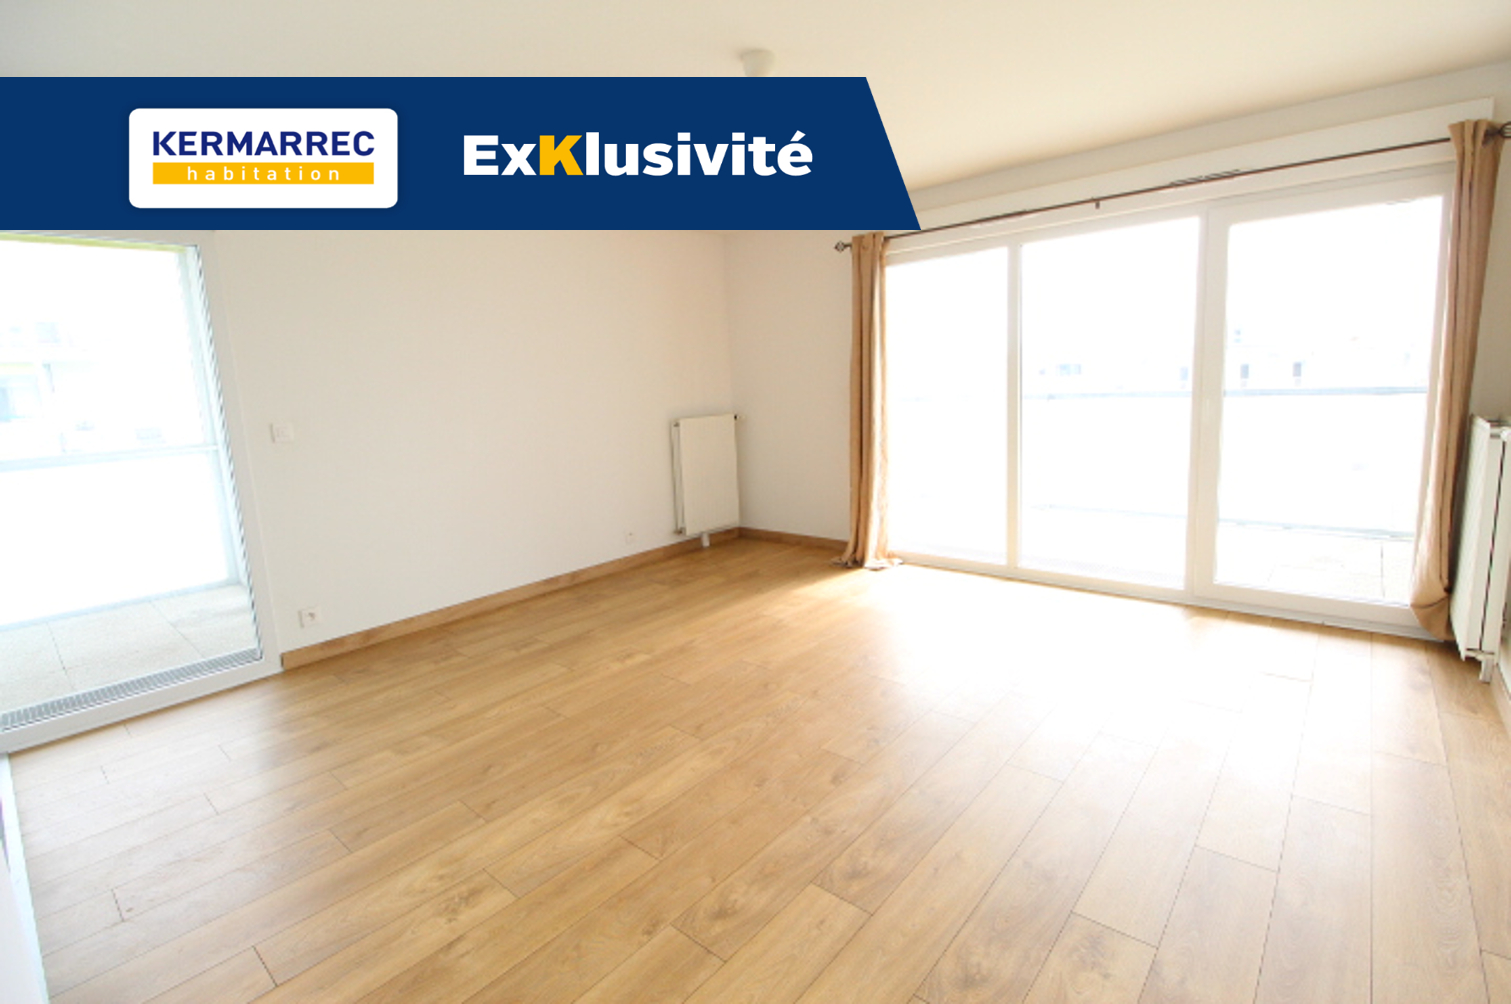 Appartement 3 pièces - 66 m² environ - 55094466a.jpg | Kermarrec Habitation